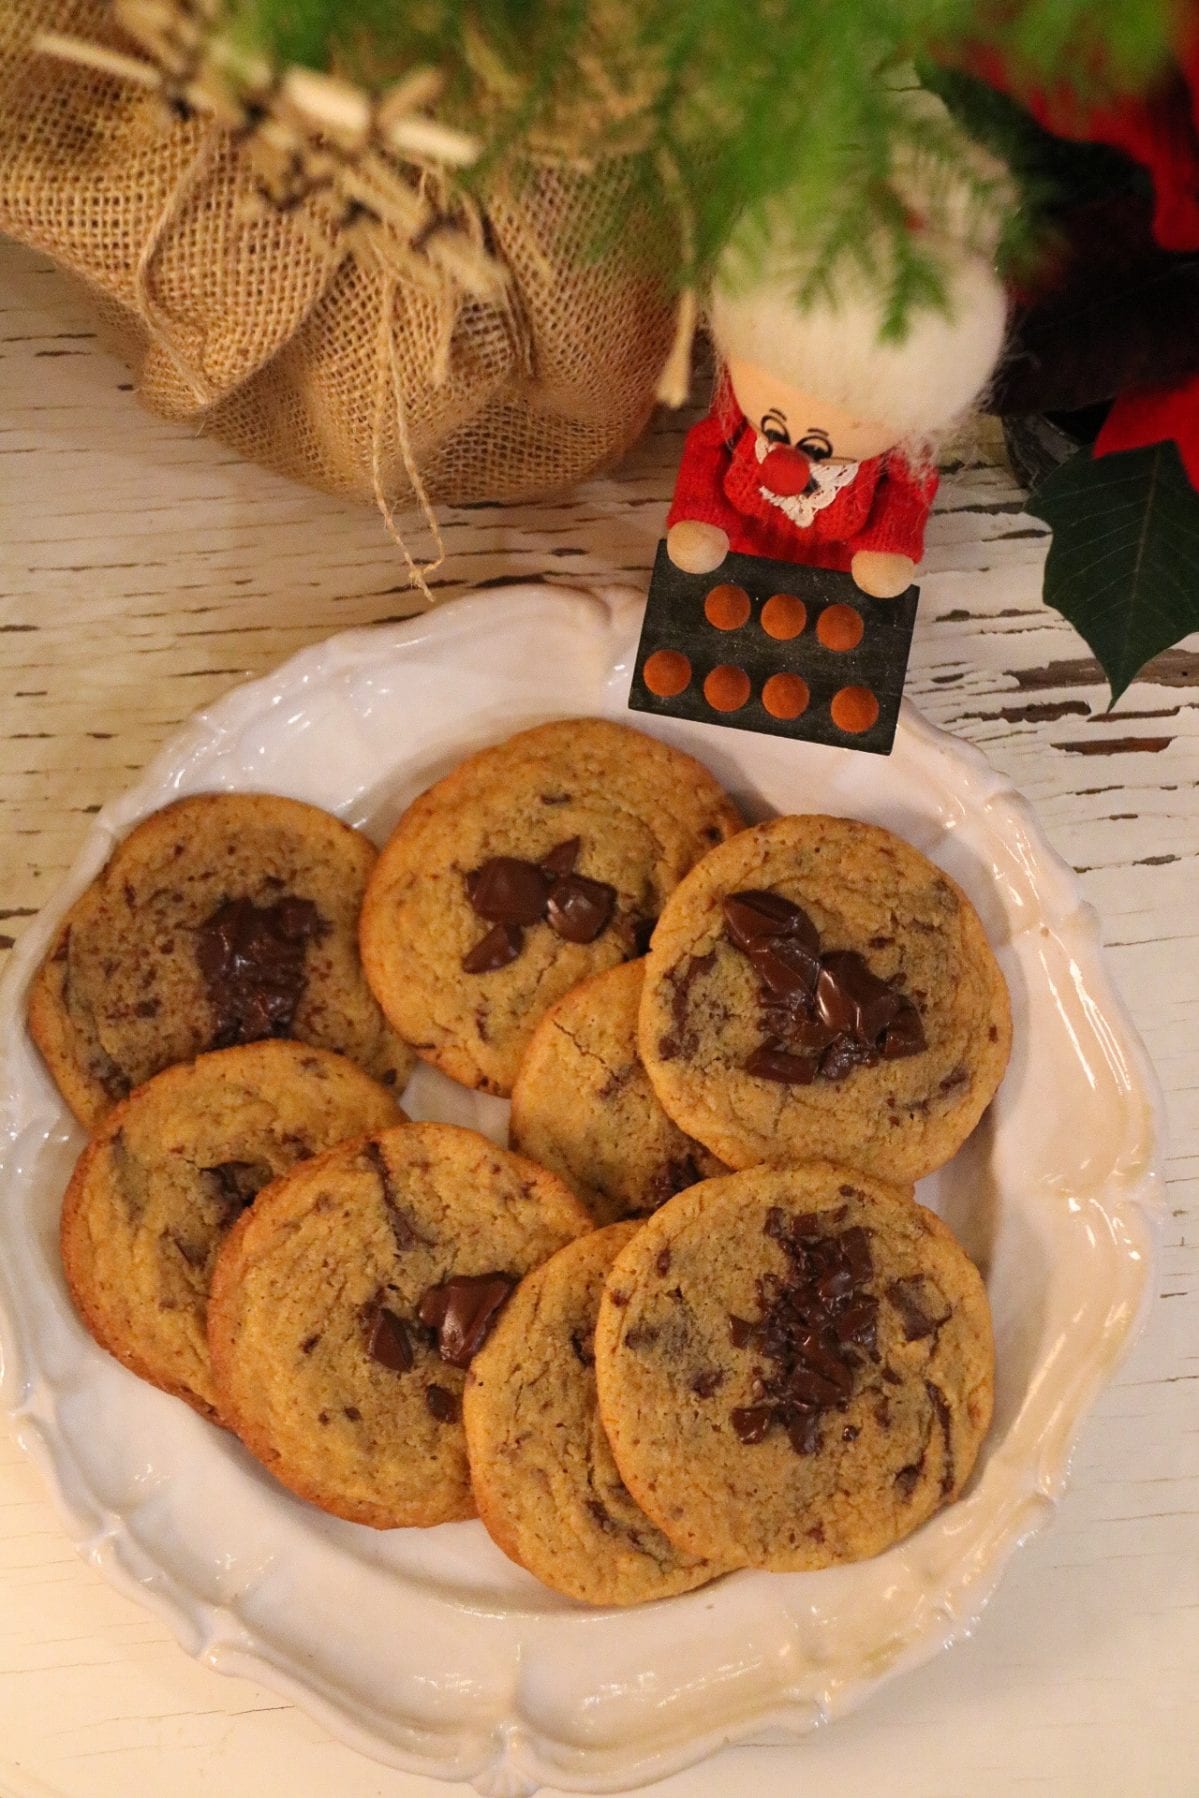 Chocolate chiip cookies